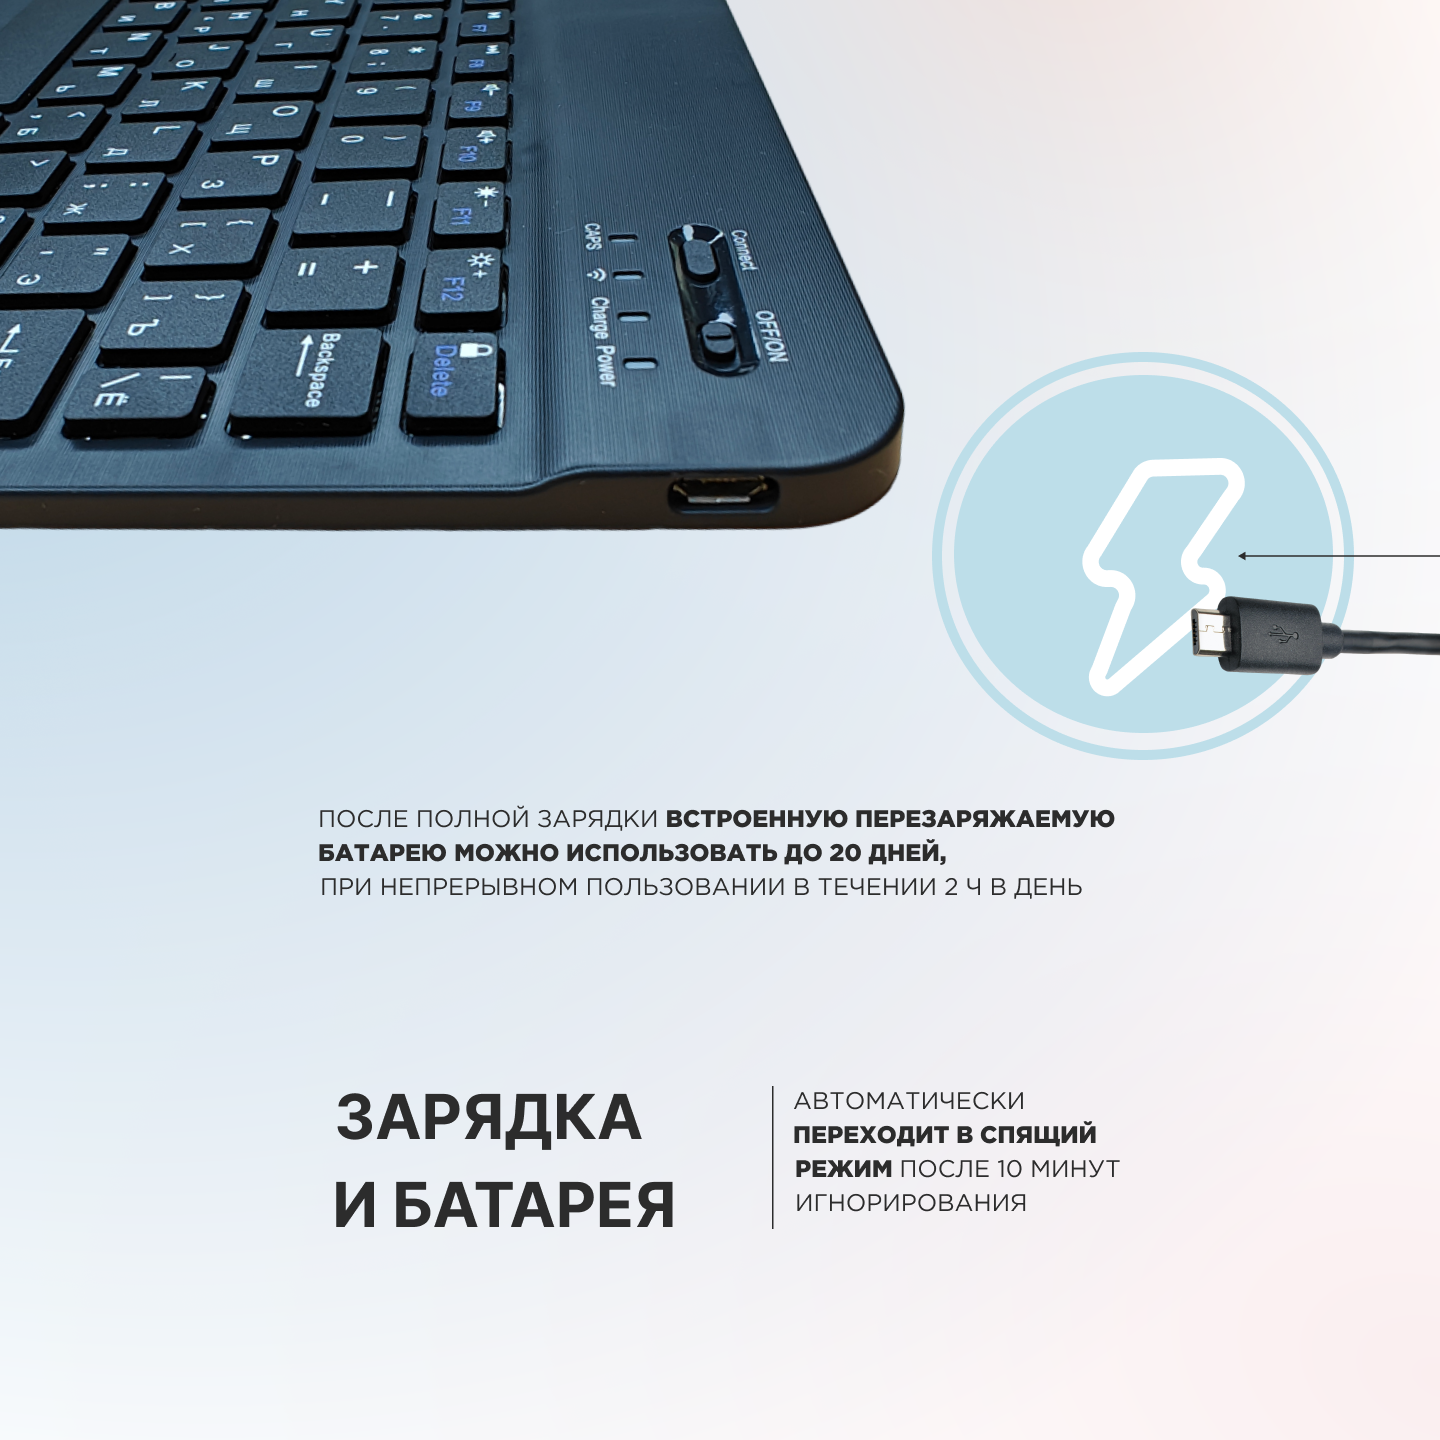 Клавиатура мембранная беспроводная для компьютера/планшета/телефона, 78 клавиш с подсветкой, Bluetooth, русская раскладка, бесшумные клавиши.